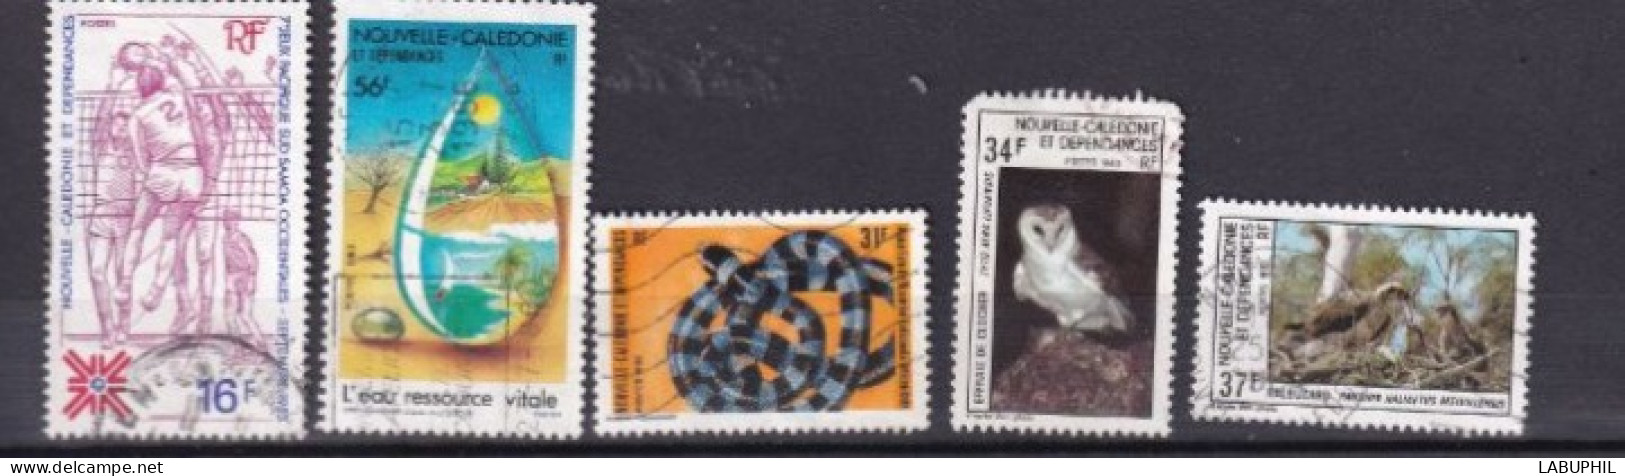 NOUVELLE CALEDONIE Dispersion D'une Collection Oblitéré Used  1983 - Oblitérés